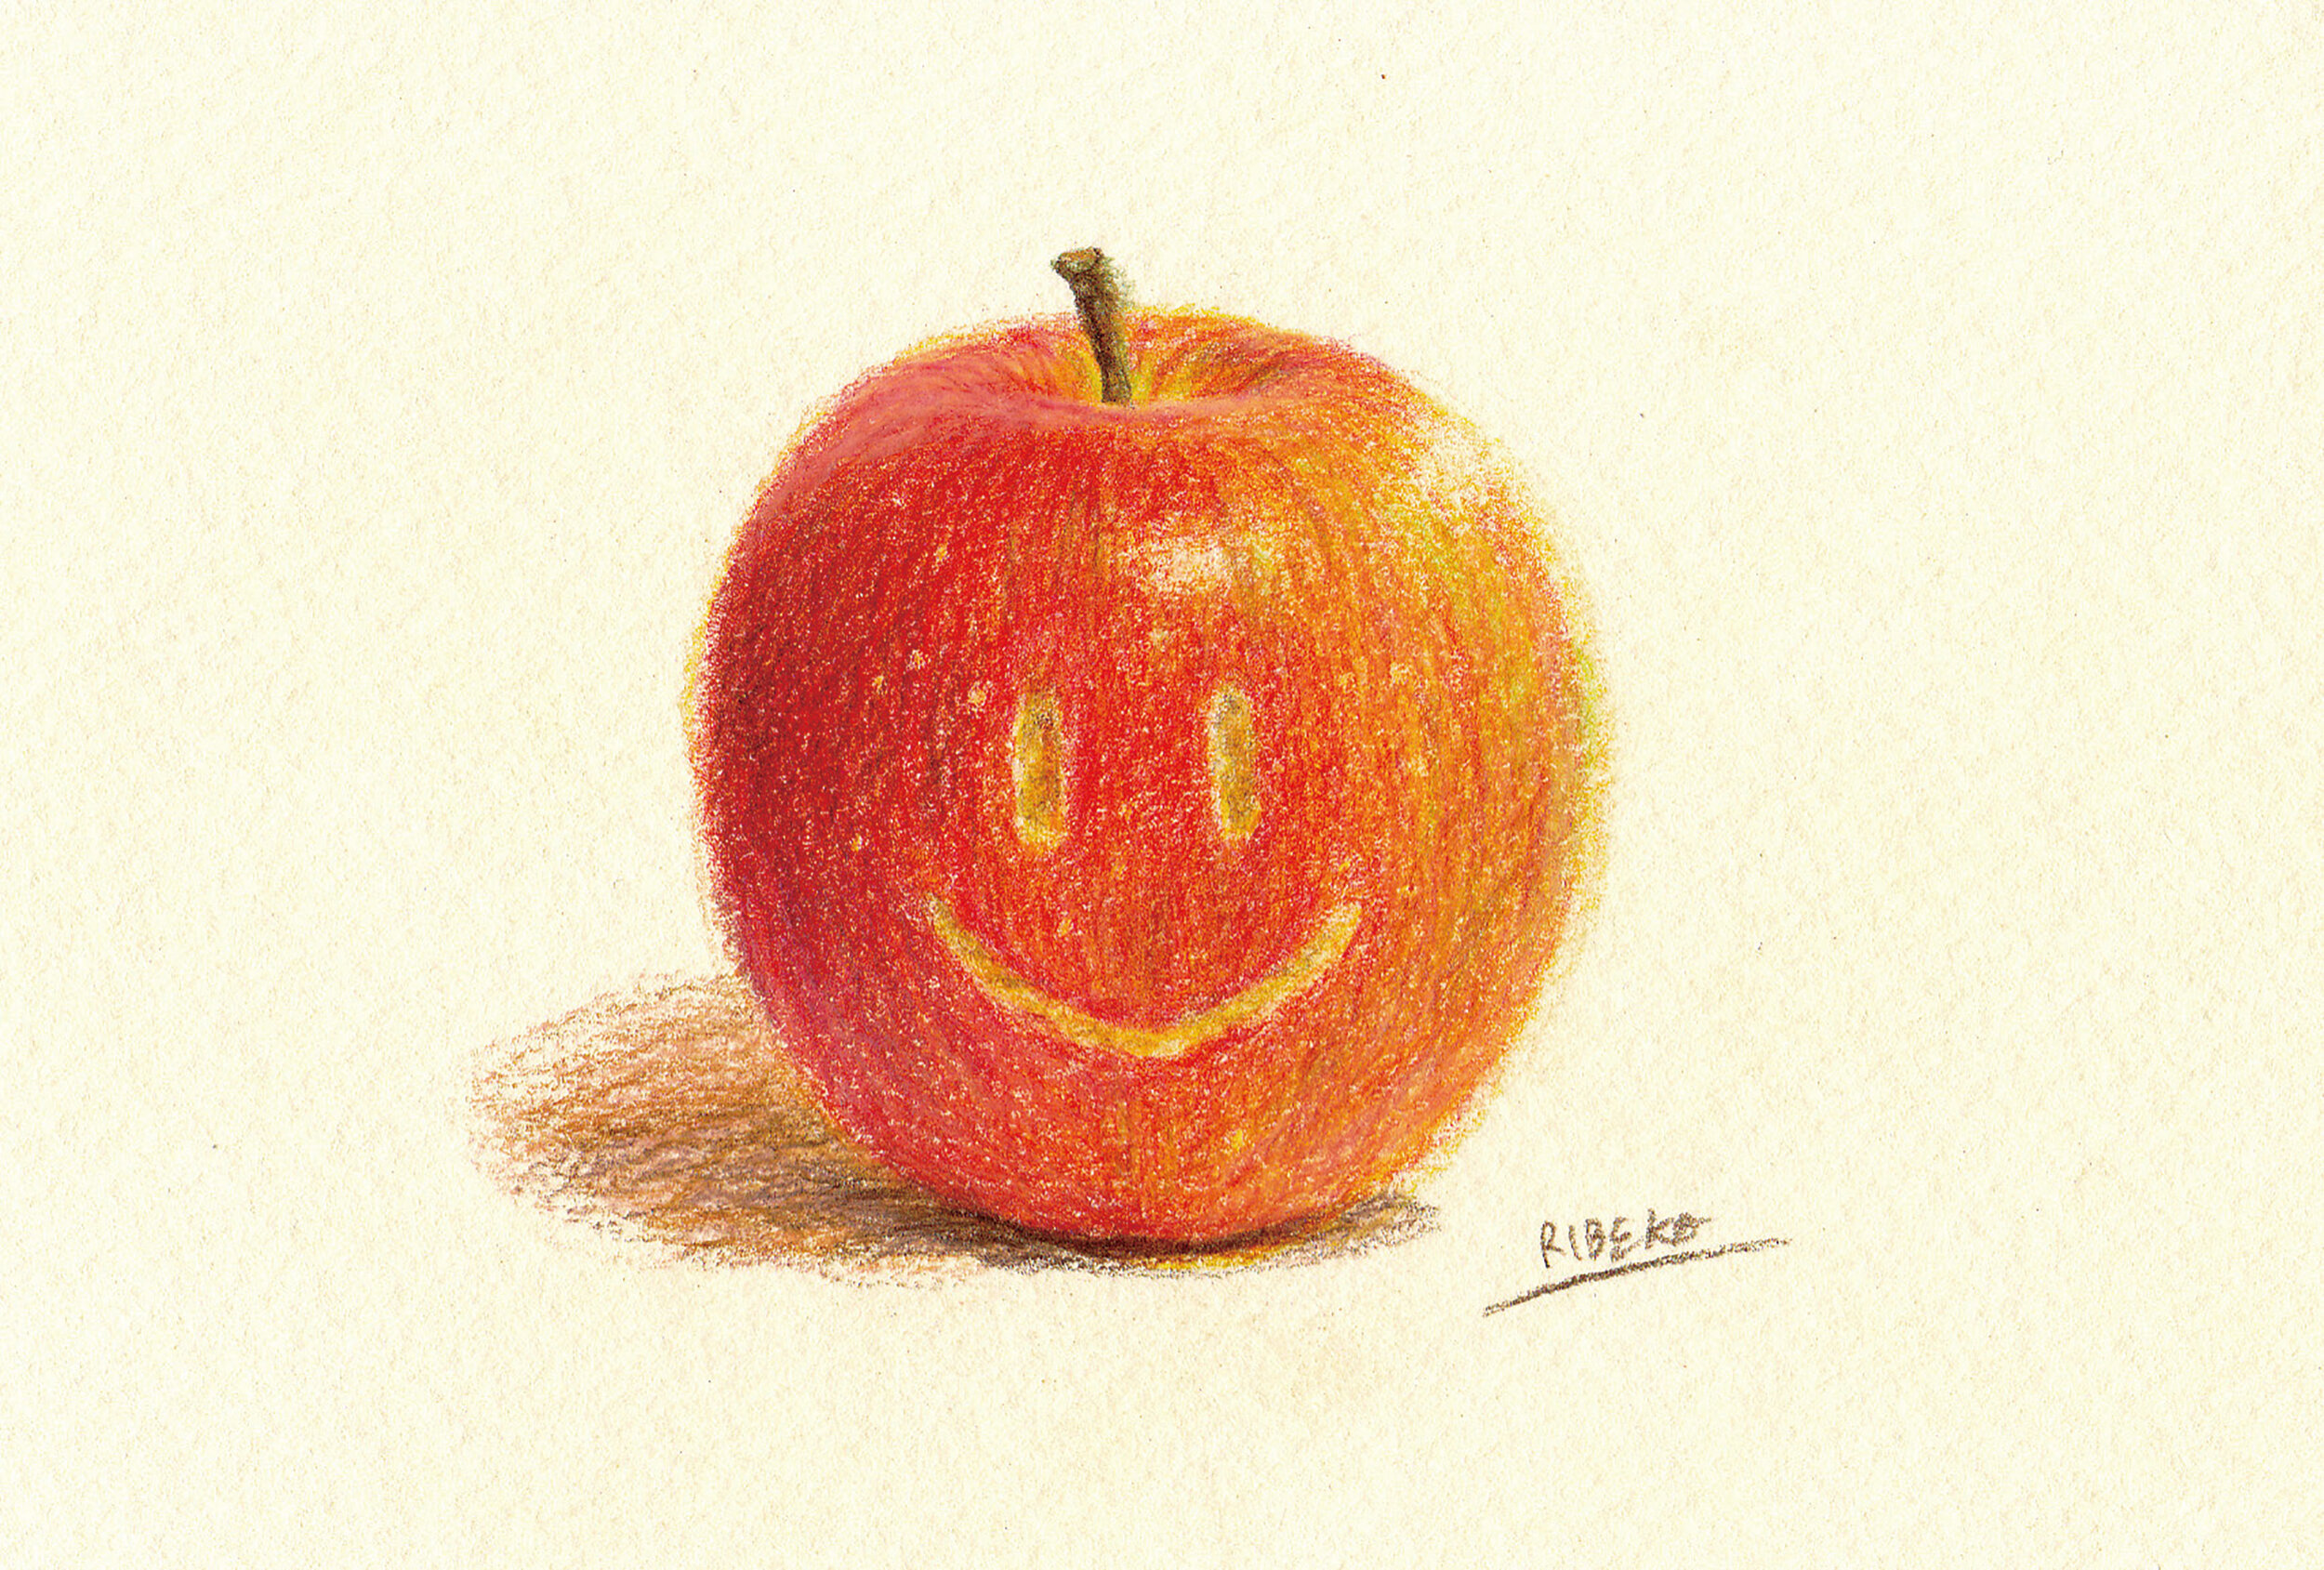 Smiling-apple2020.jpg